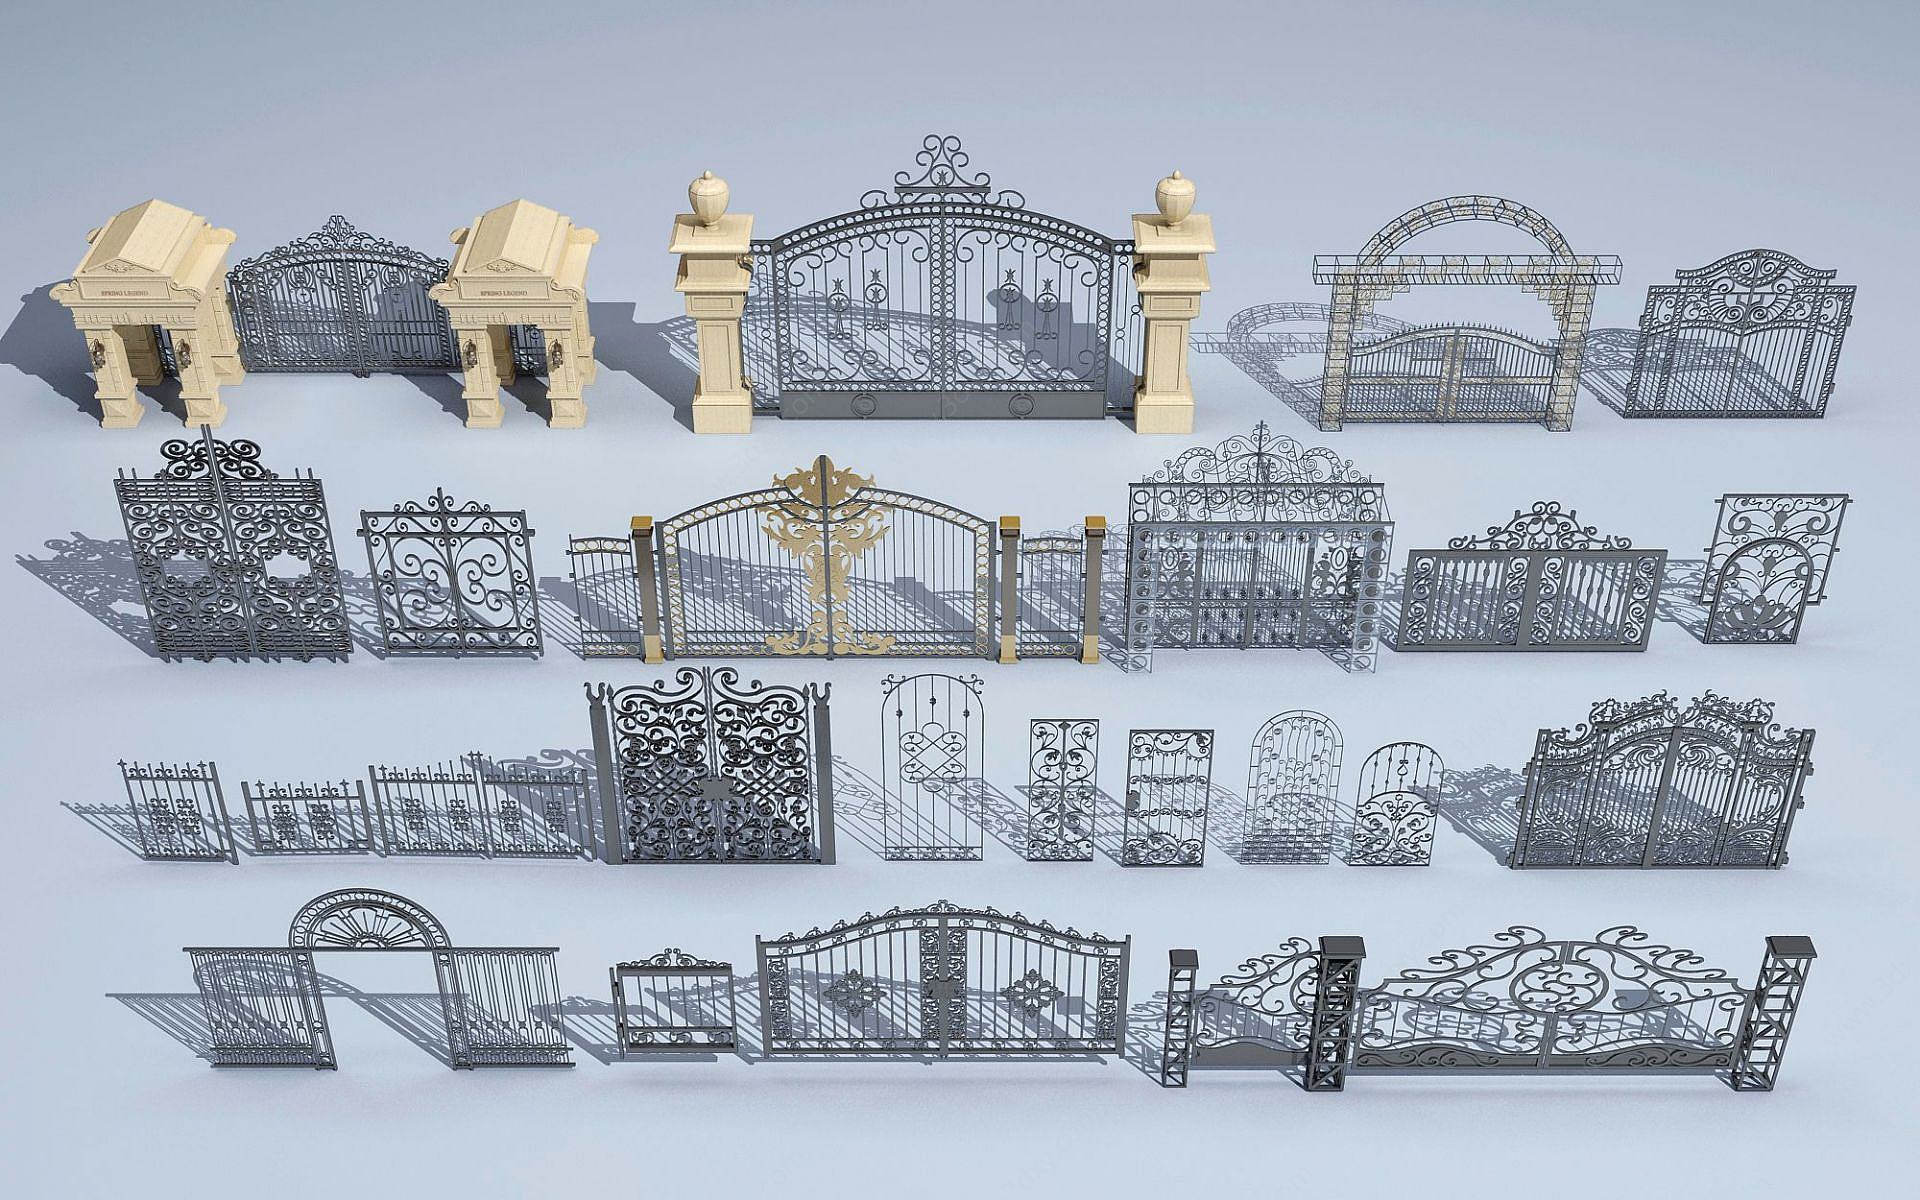 铁艺栏杆3D模型